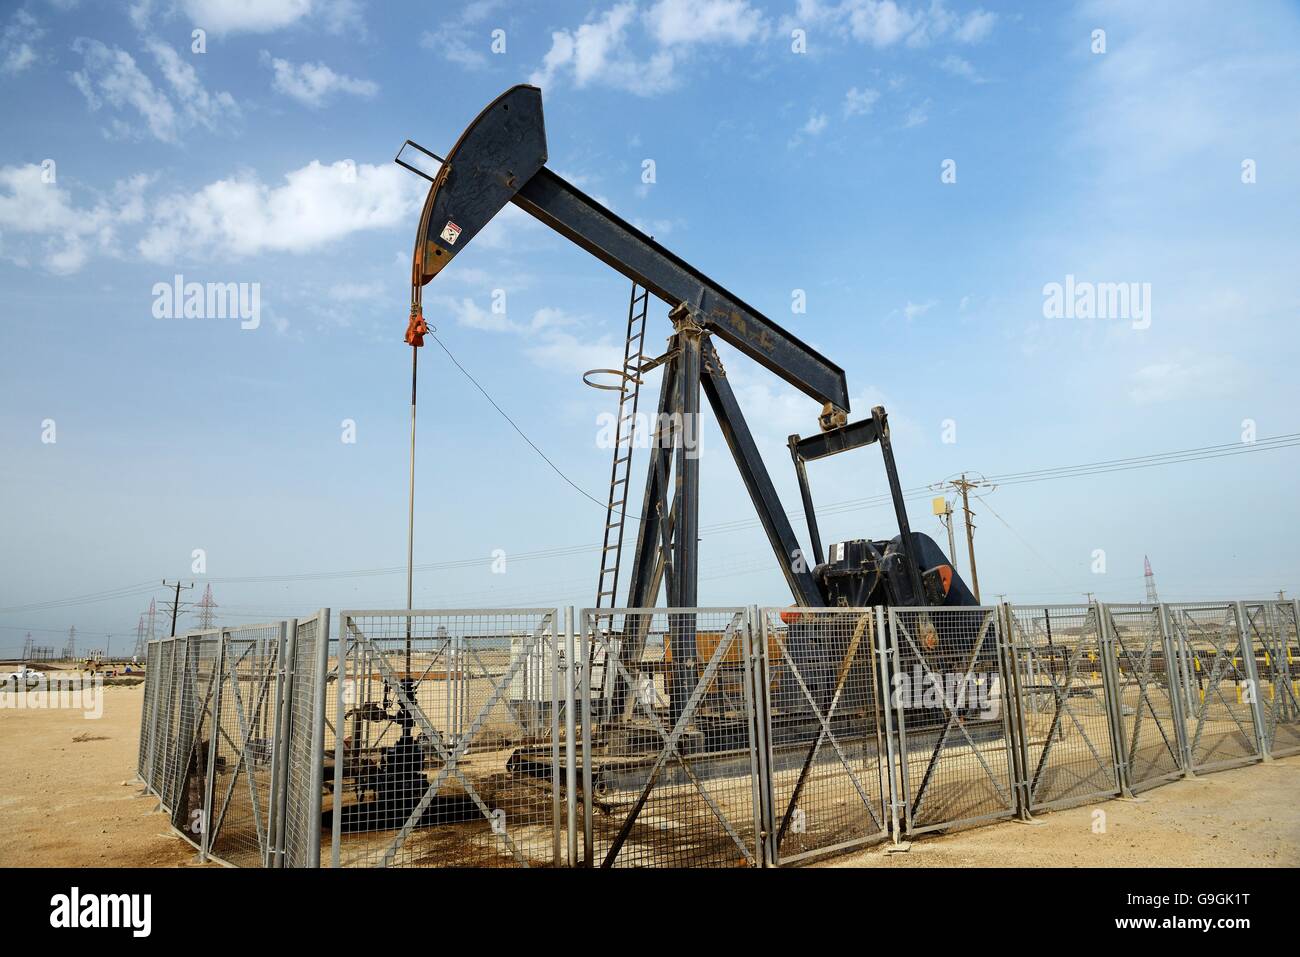 Bohrschwengels aka Öl Pferd, Esel, Öl Jack nickt wirft Strahl Pumpe Rohöl in der Wüste von Bahrain in Sakhir am Persischen Golf Stockfoto